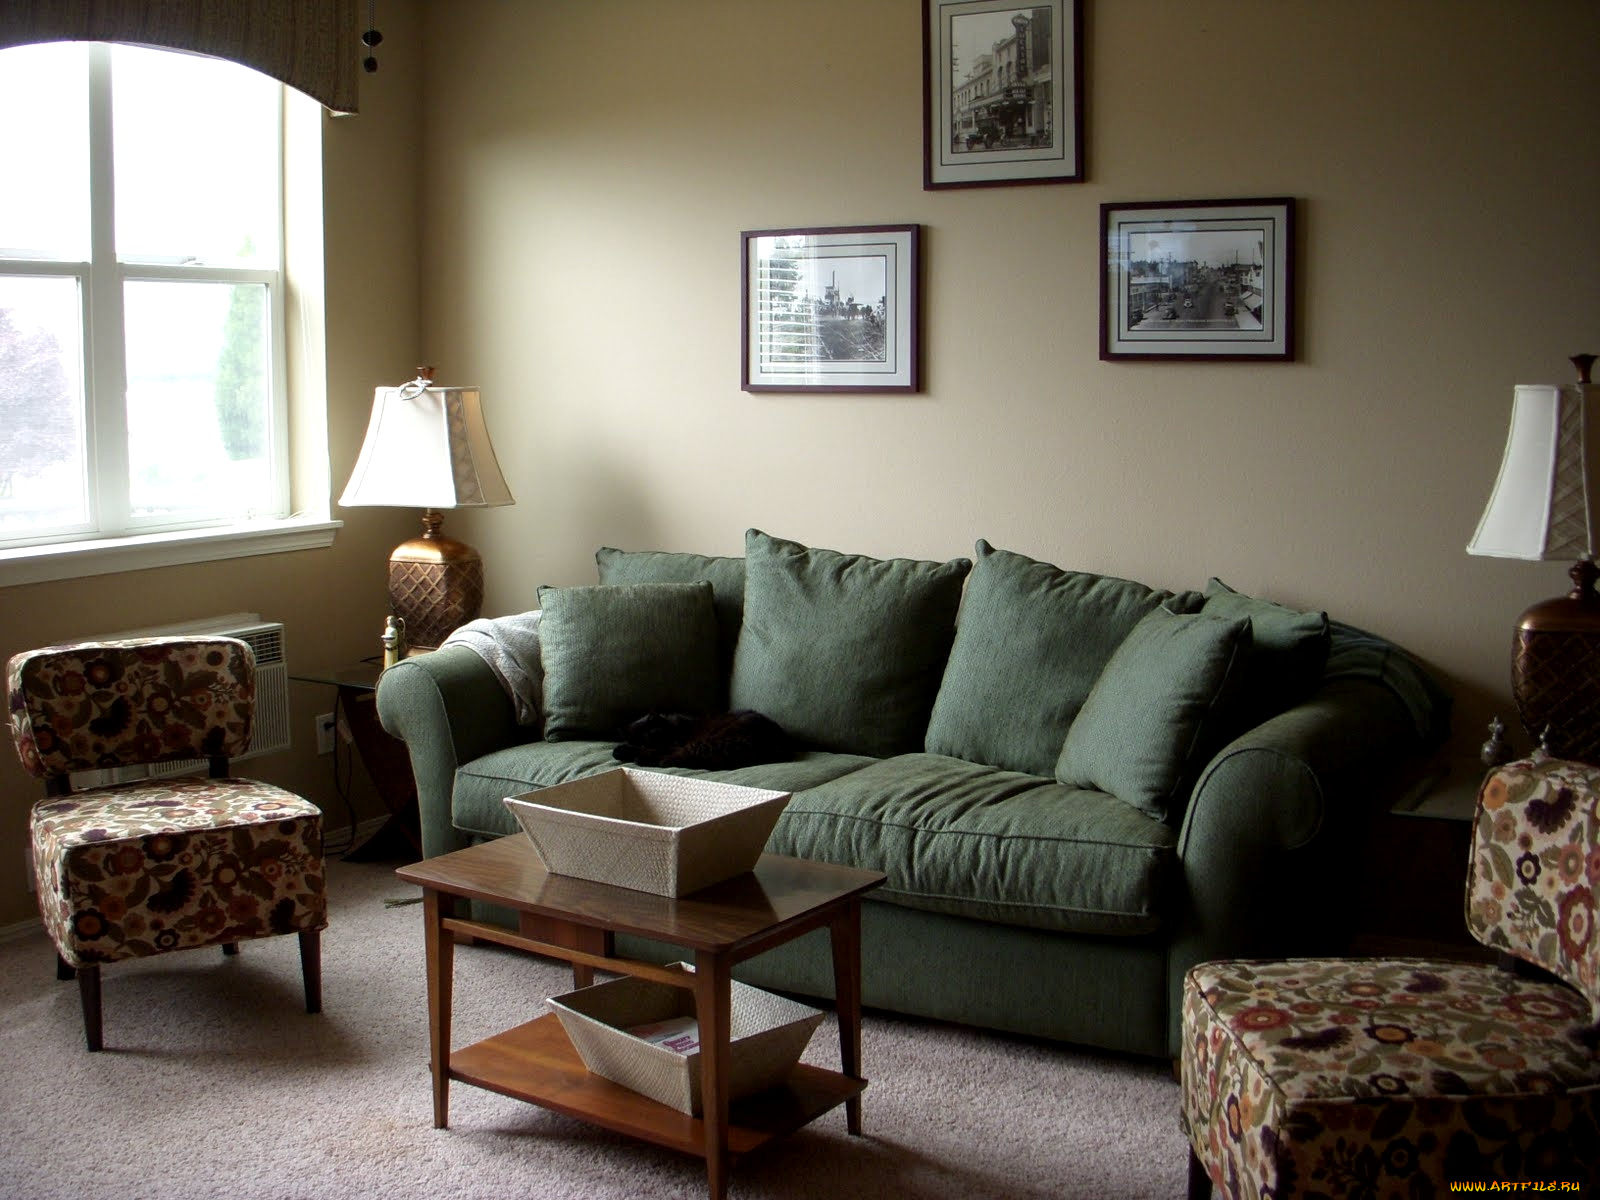 Хаки в интерьере. Диван в интерьере гостиной. Зеленый диван в интерьере. Оливковый цвет стен в интерьере. Оливковый диван в интерьере.